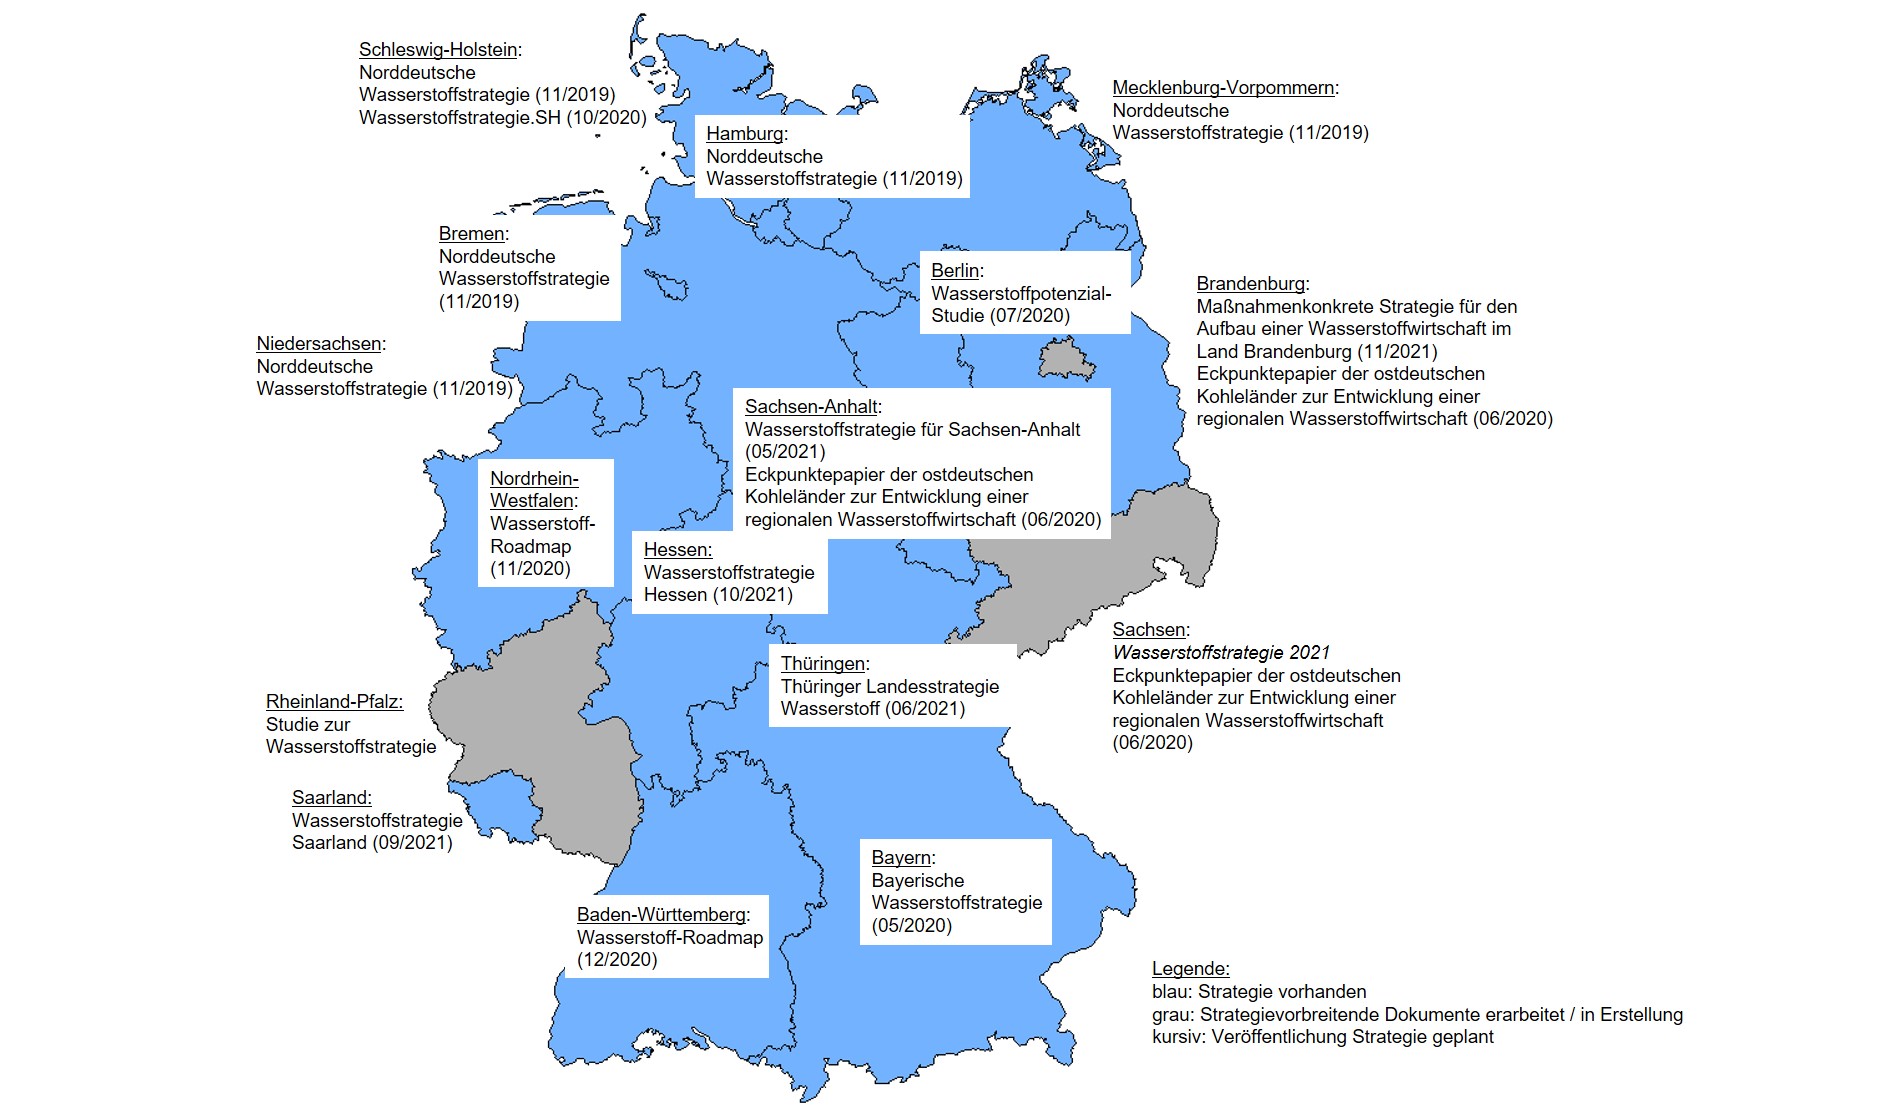 Abbildung 1:	Überblick der Wasserstoffstrategien in Deutschland. Quelle: Eigene Darstellung basierend auf Dokumentenanalysen. Karte erstellt mit ArcMap 10.4, Geodaten: © GeoBasis-DE / BKG (2020).